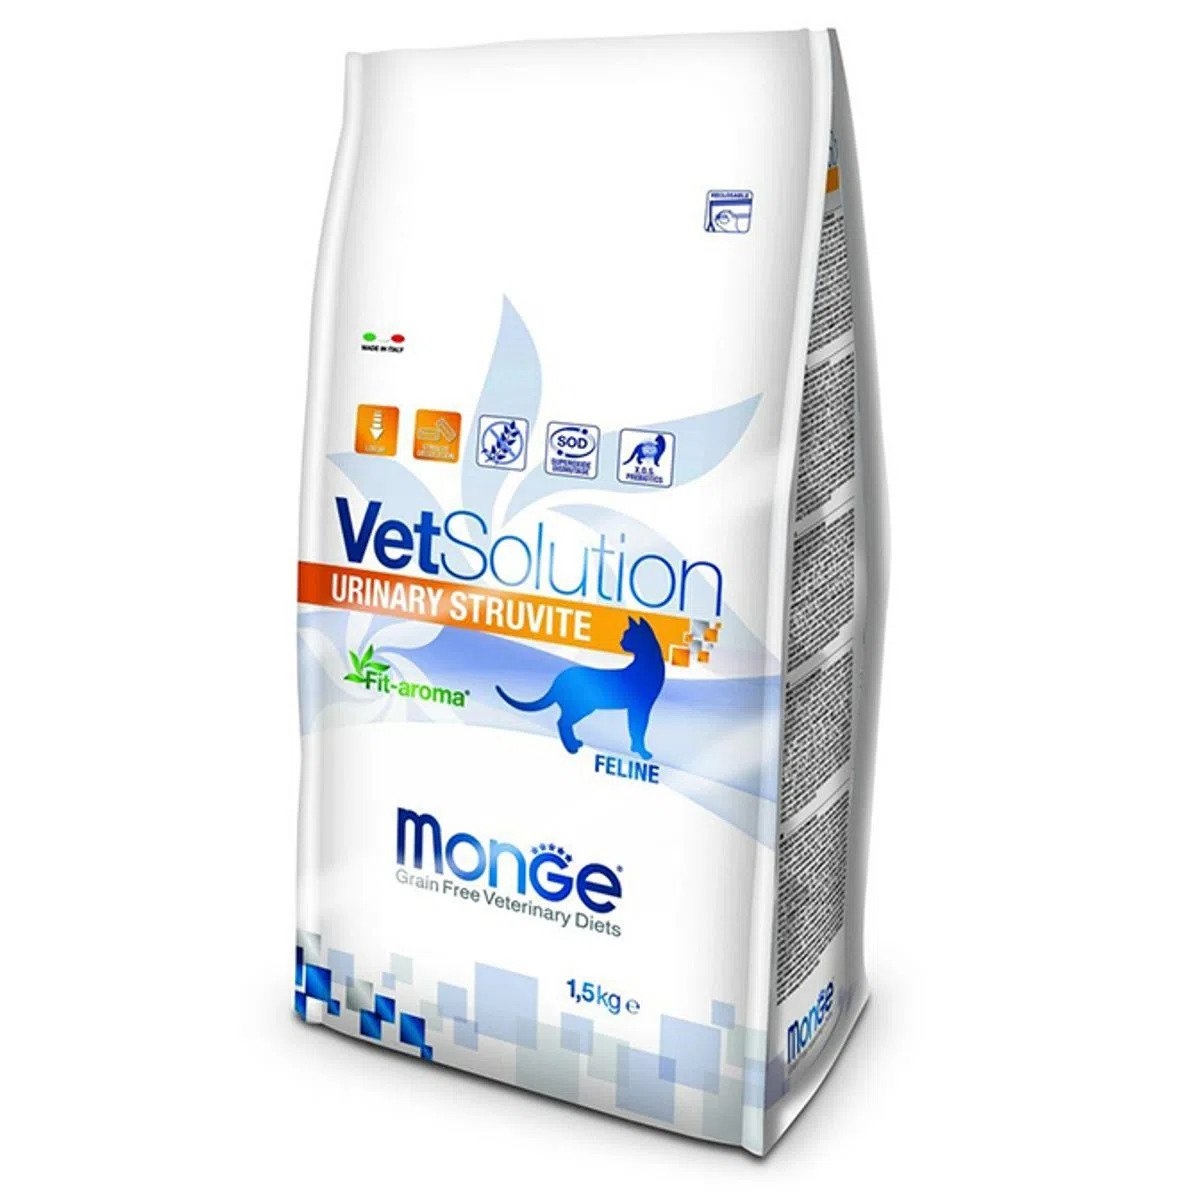 Monge Vetsolution Urinary Struvite Feline, 1.5 kg MONGE